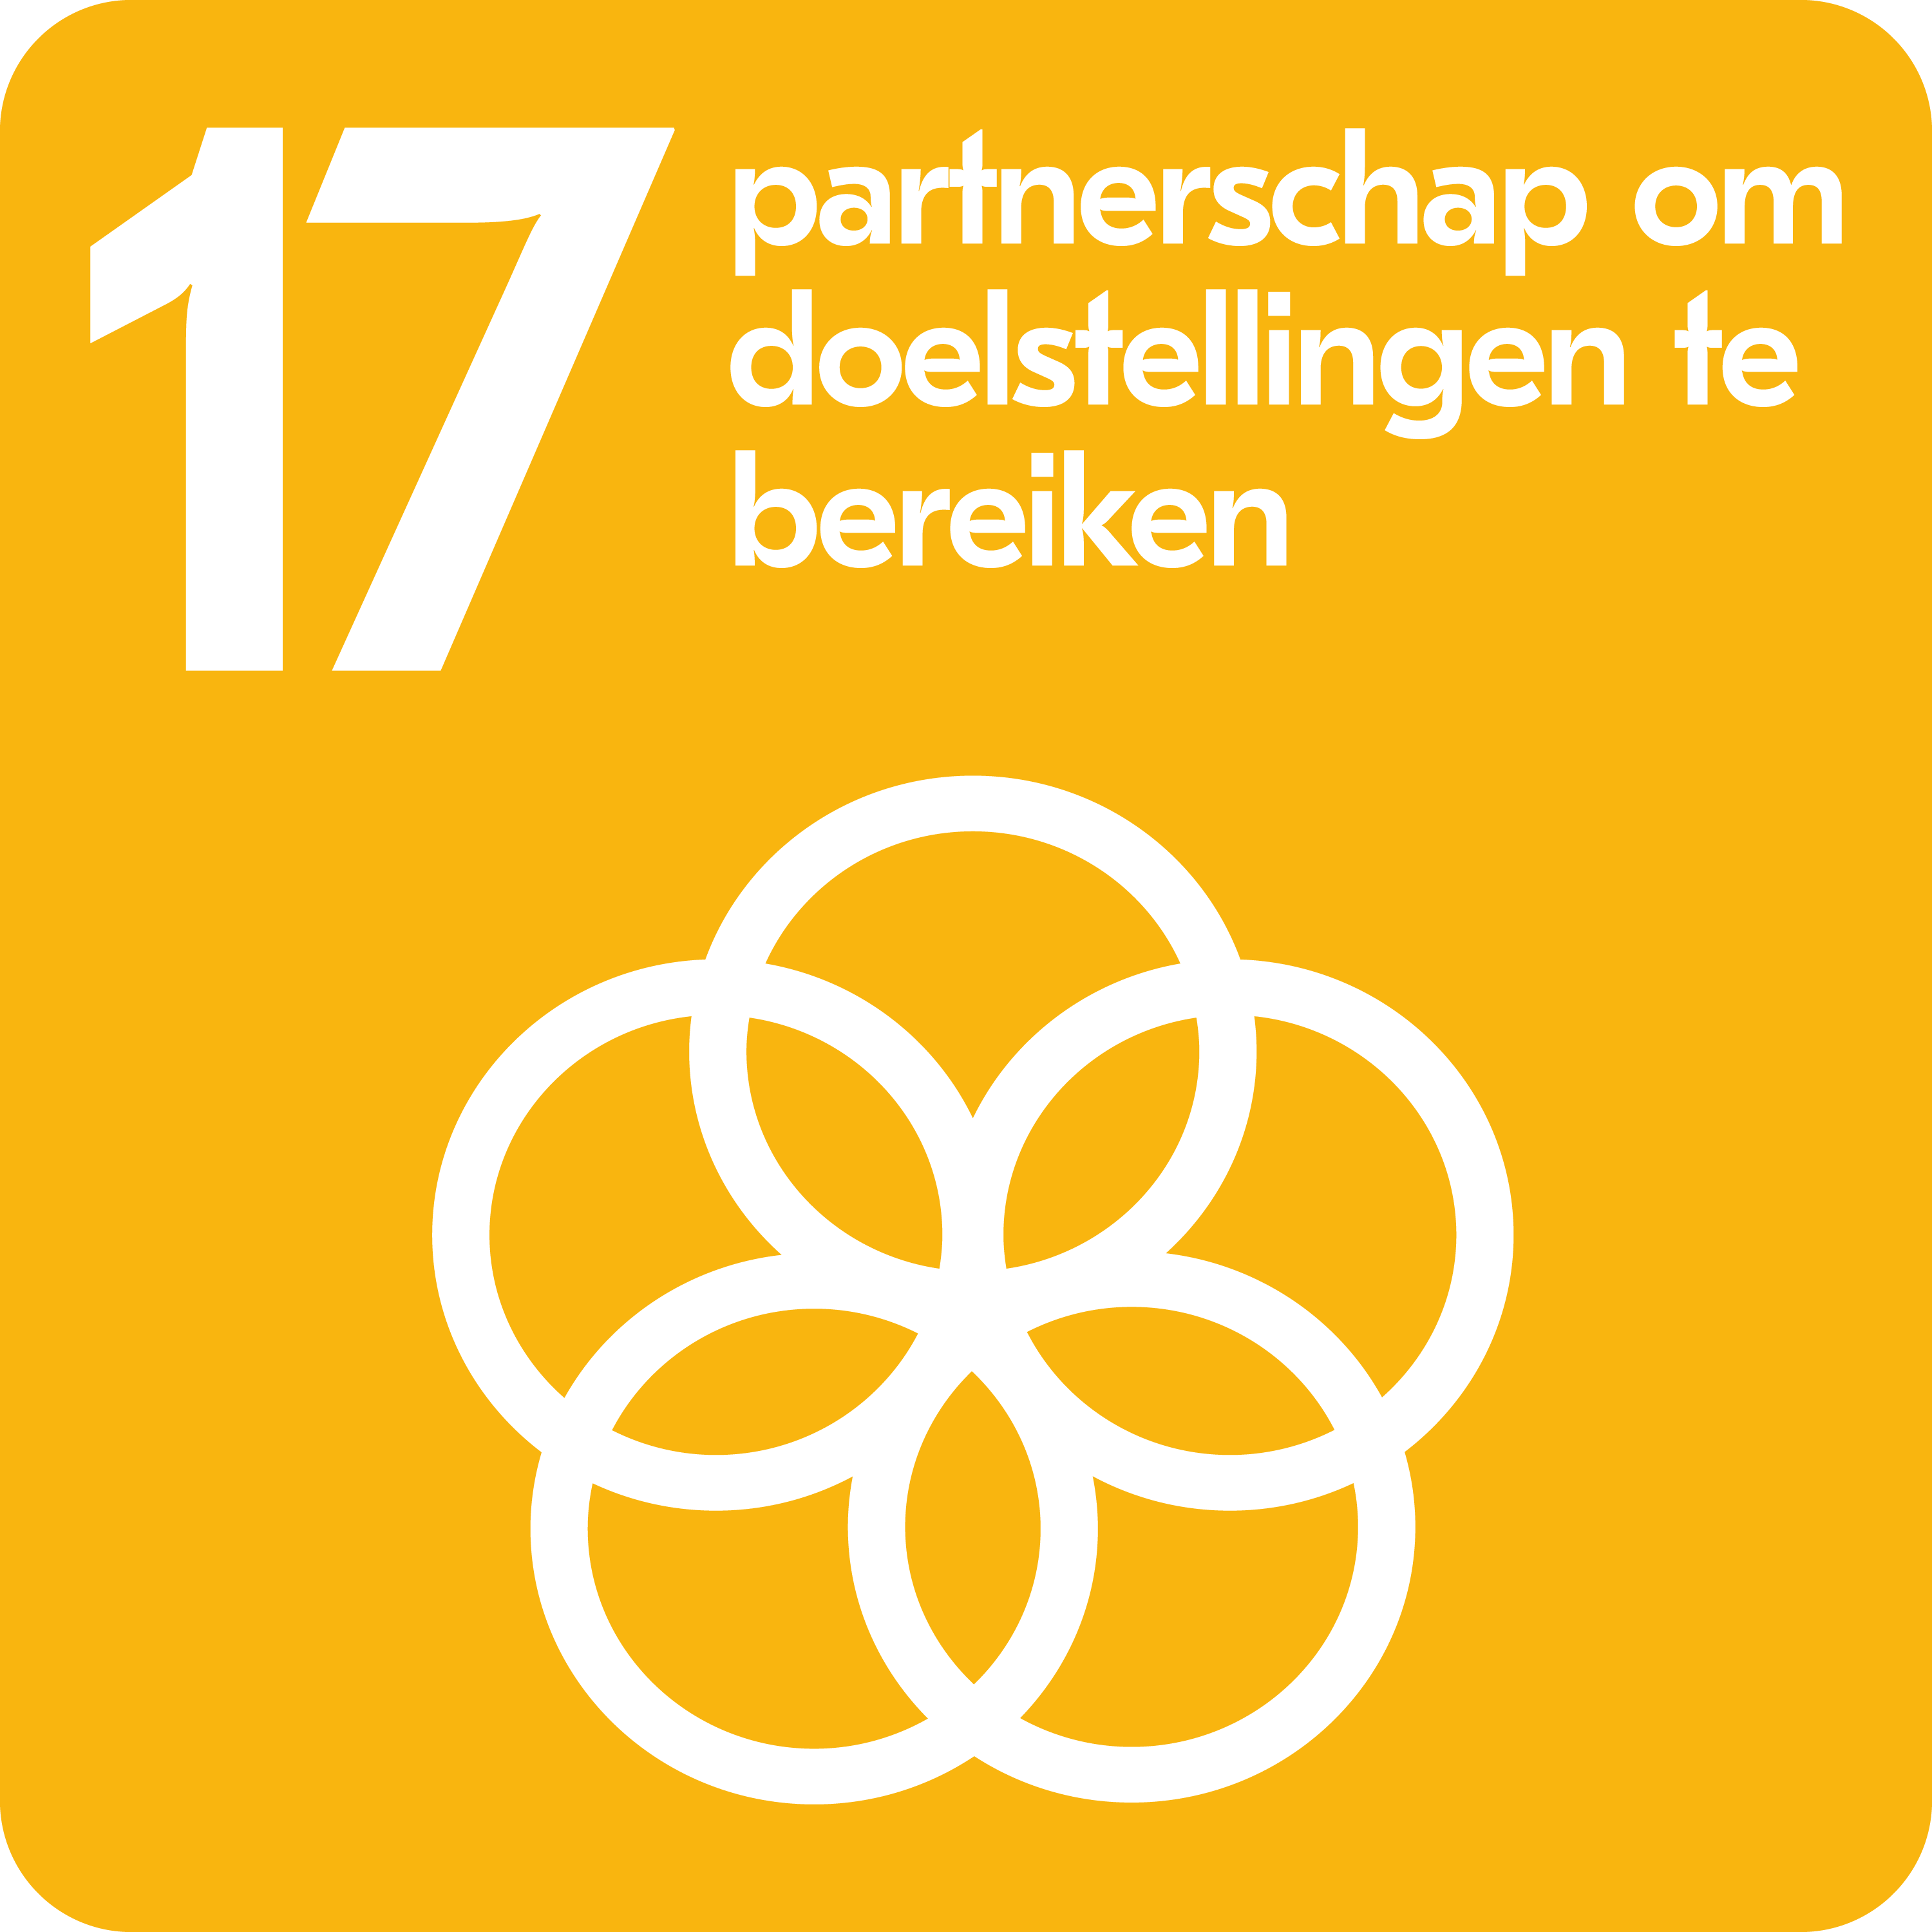 Duurzame Ontwikkelingsdoelen - Partnerschap om doelstellingen te bereiken